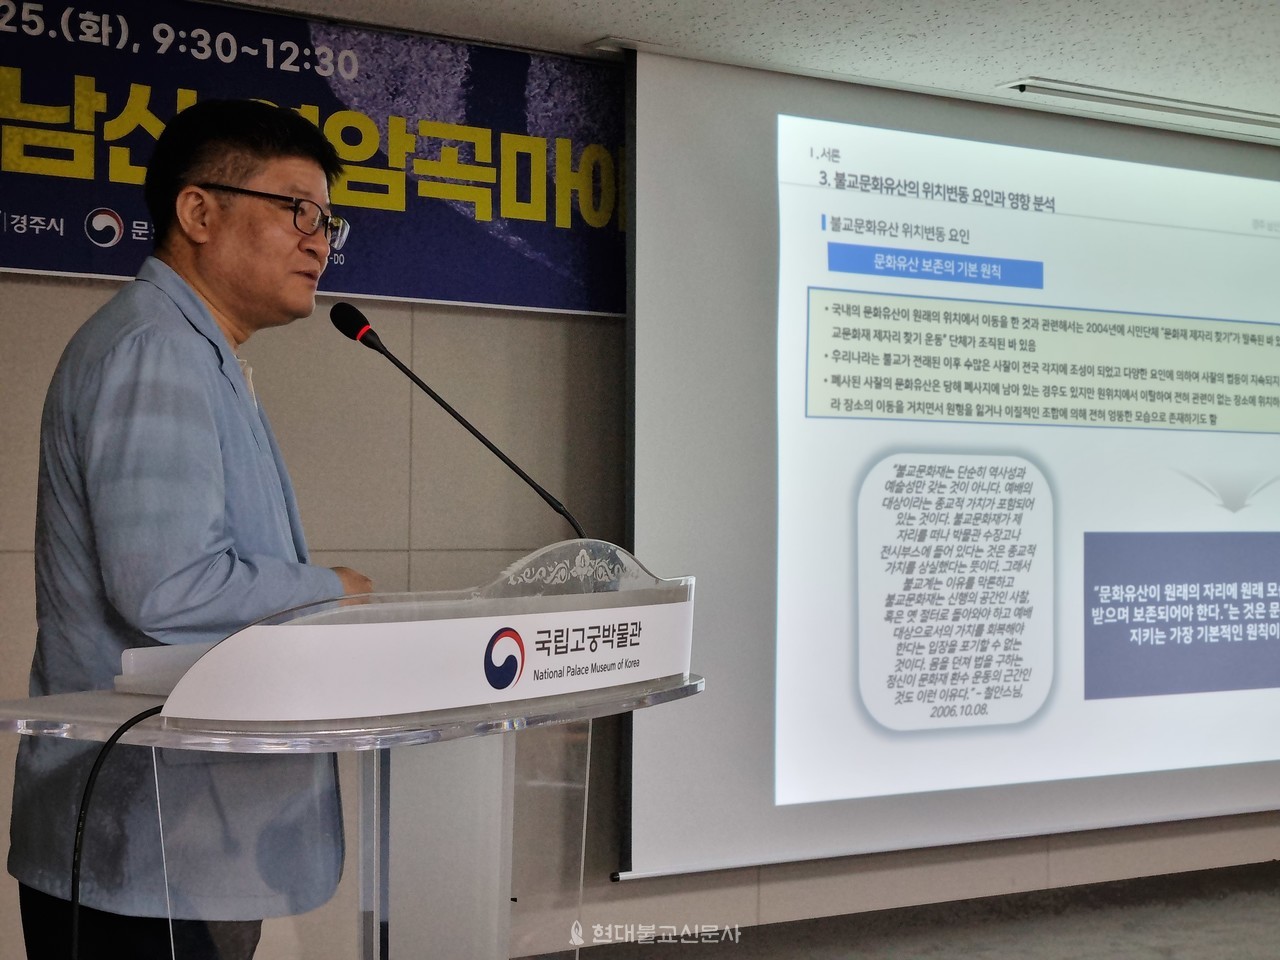 두 번째 발제자인 한동수 한국건축역사학회장이 발표하고 있다. 그는 보존 방안으로 입불, 현상유지, 와불을 제시했으며, 보존에 대한 중장기 로드맵을 제안했다.